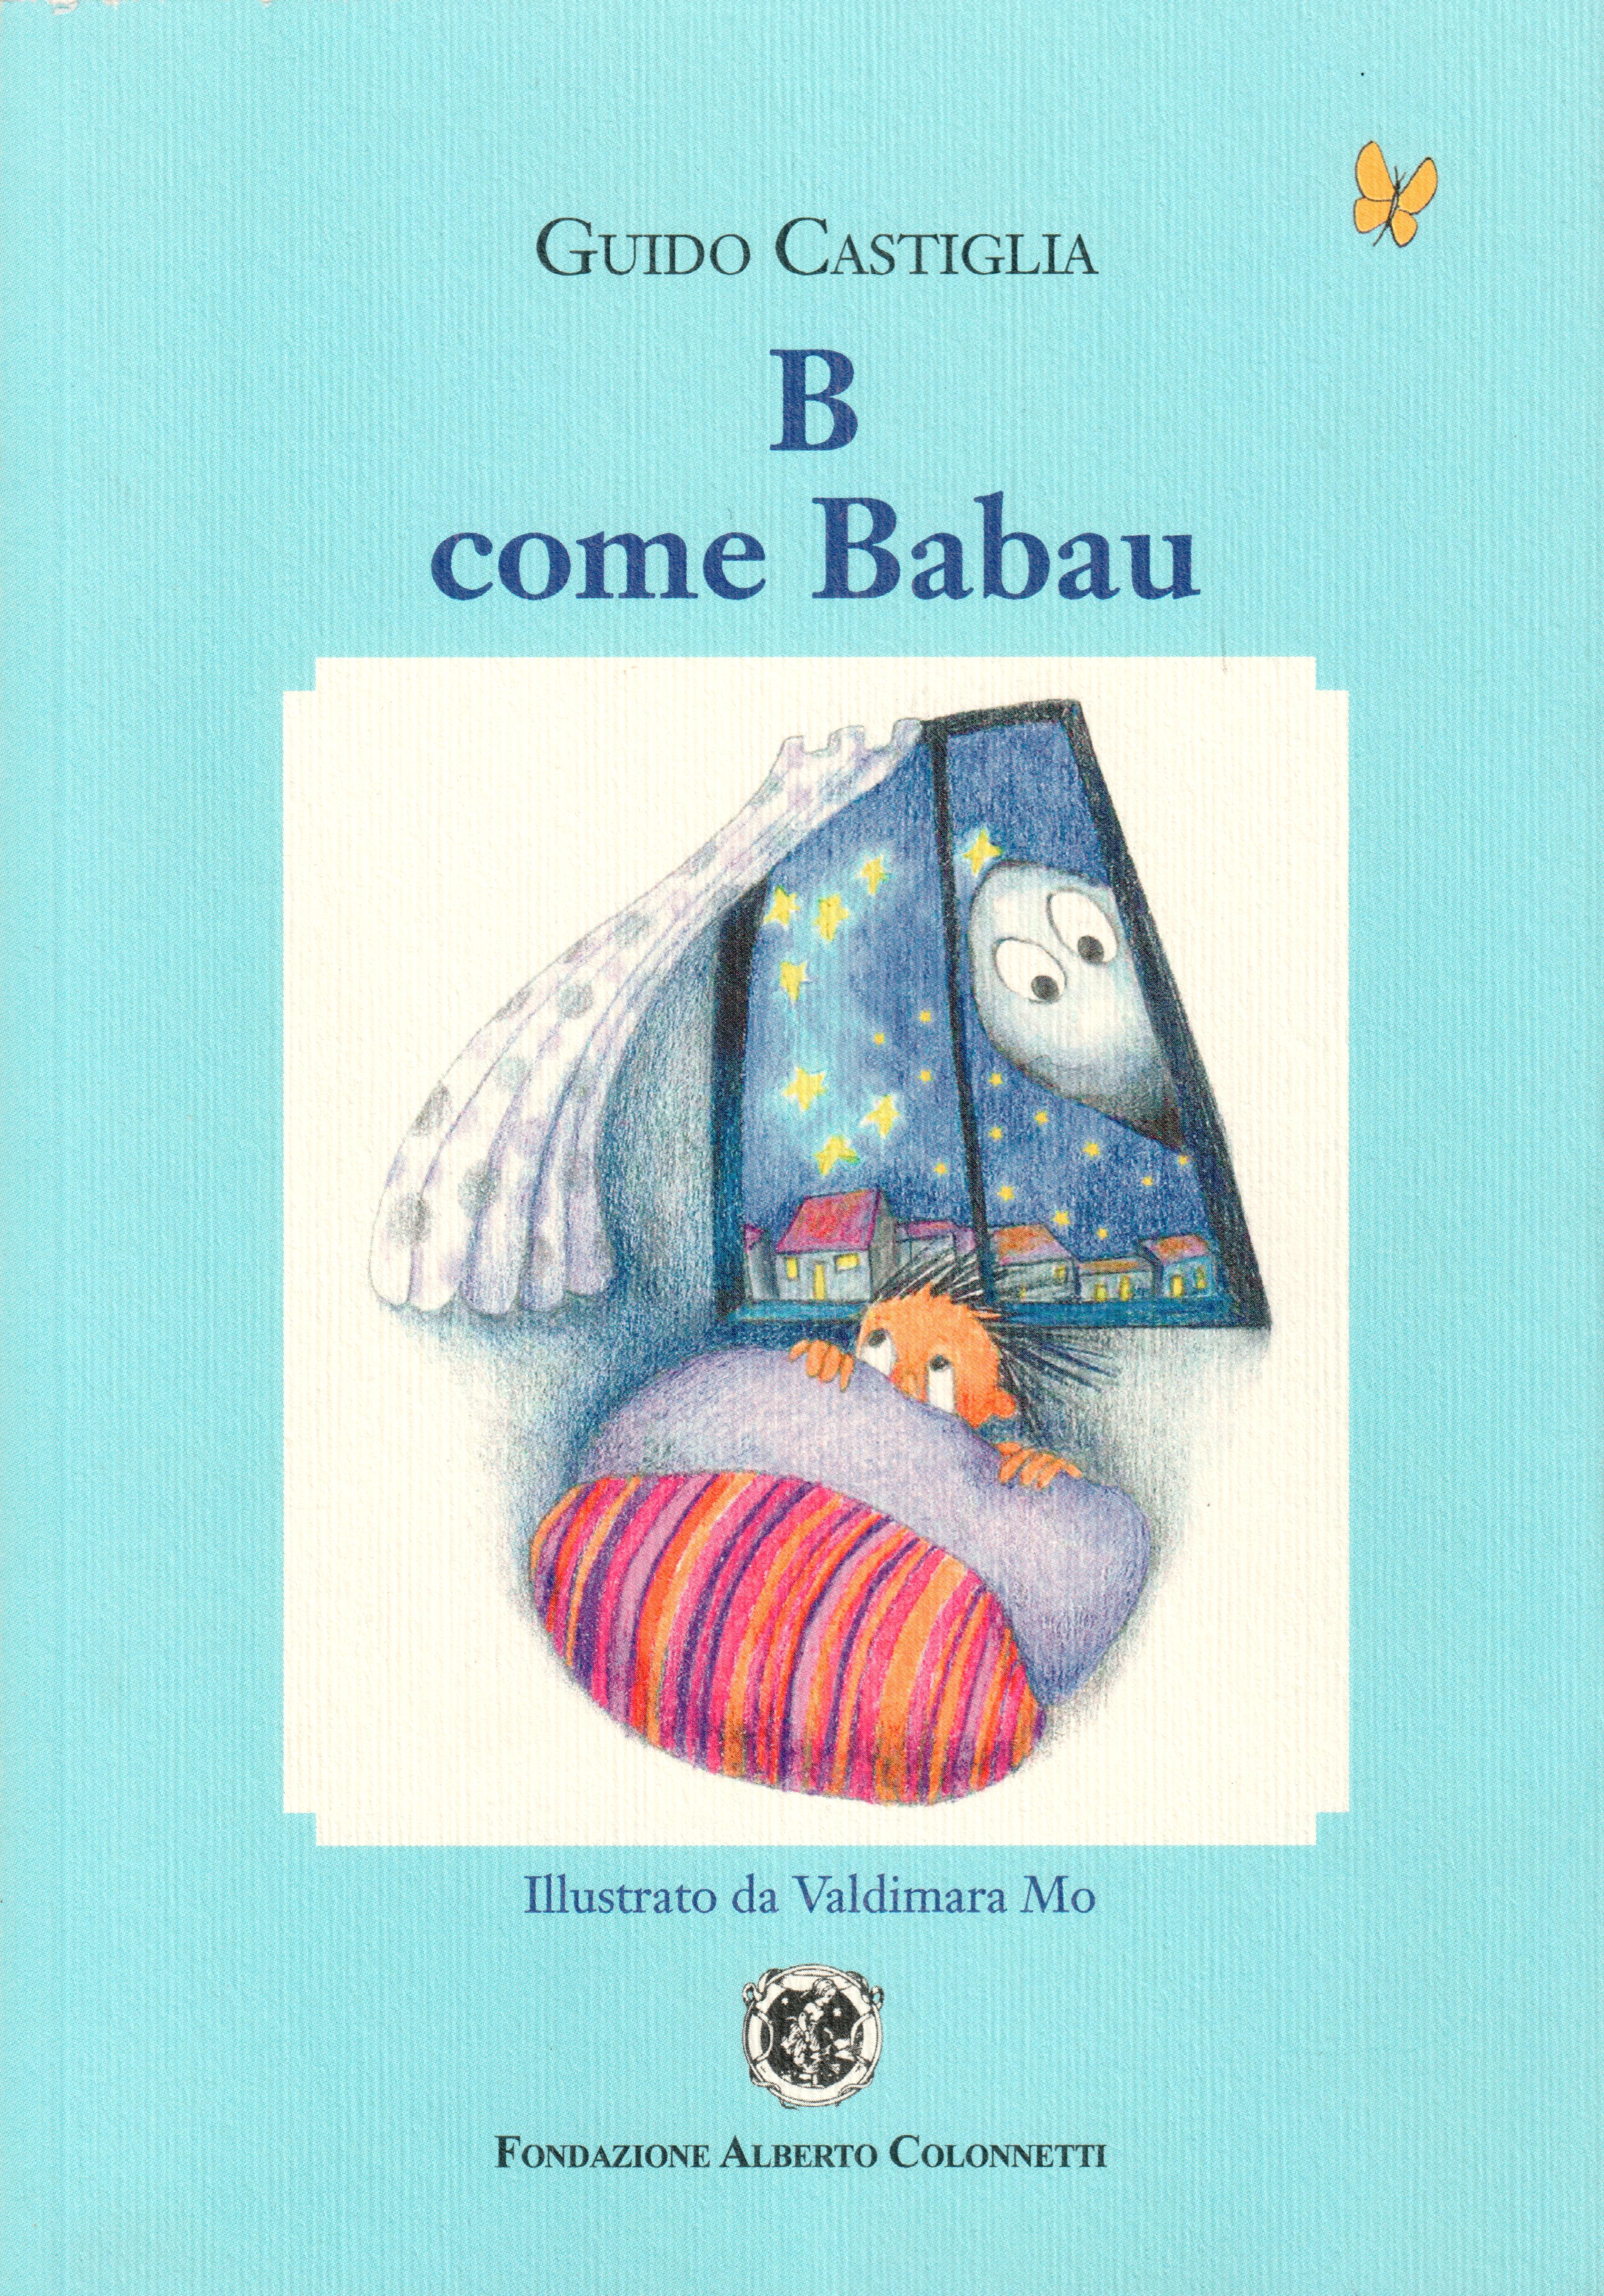 B come Babau – Guido Castiglia